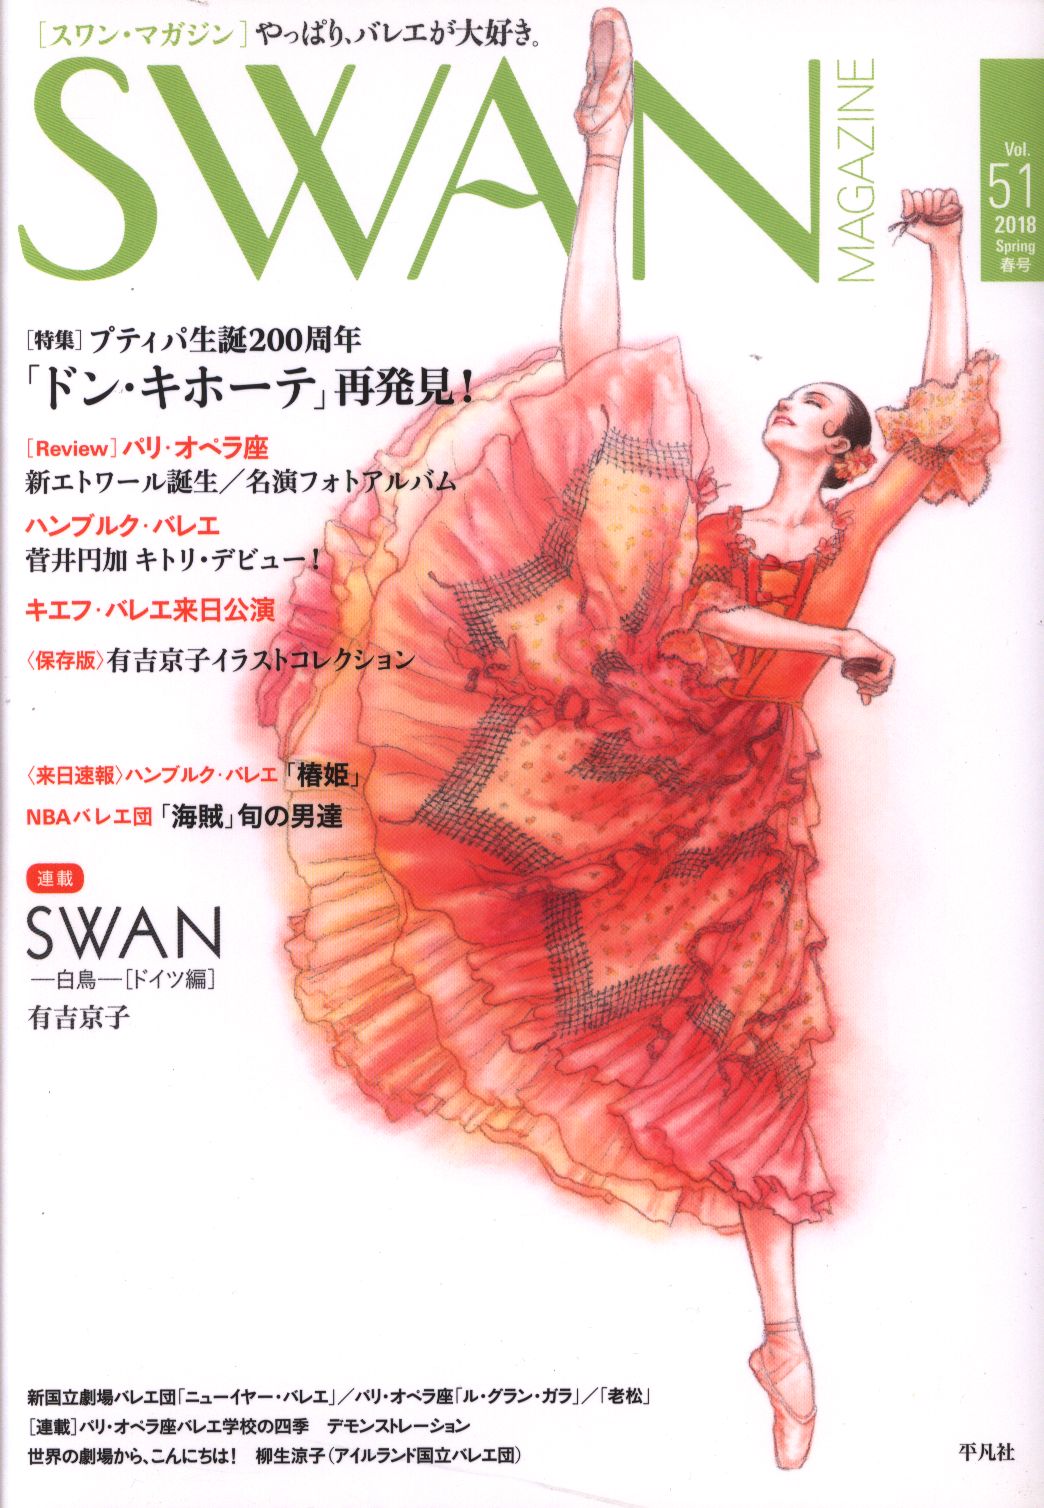 有吉京子 Swan Magazine 18春 51 まんだらけ Mandarake